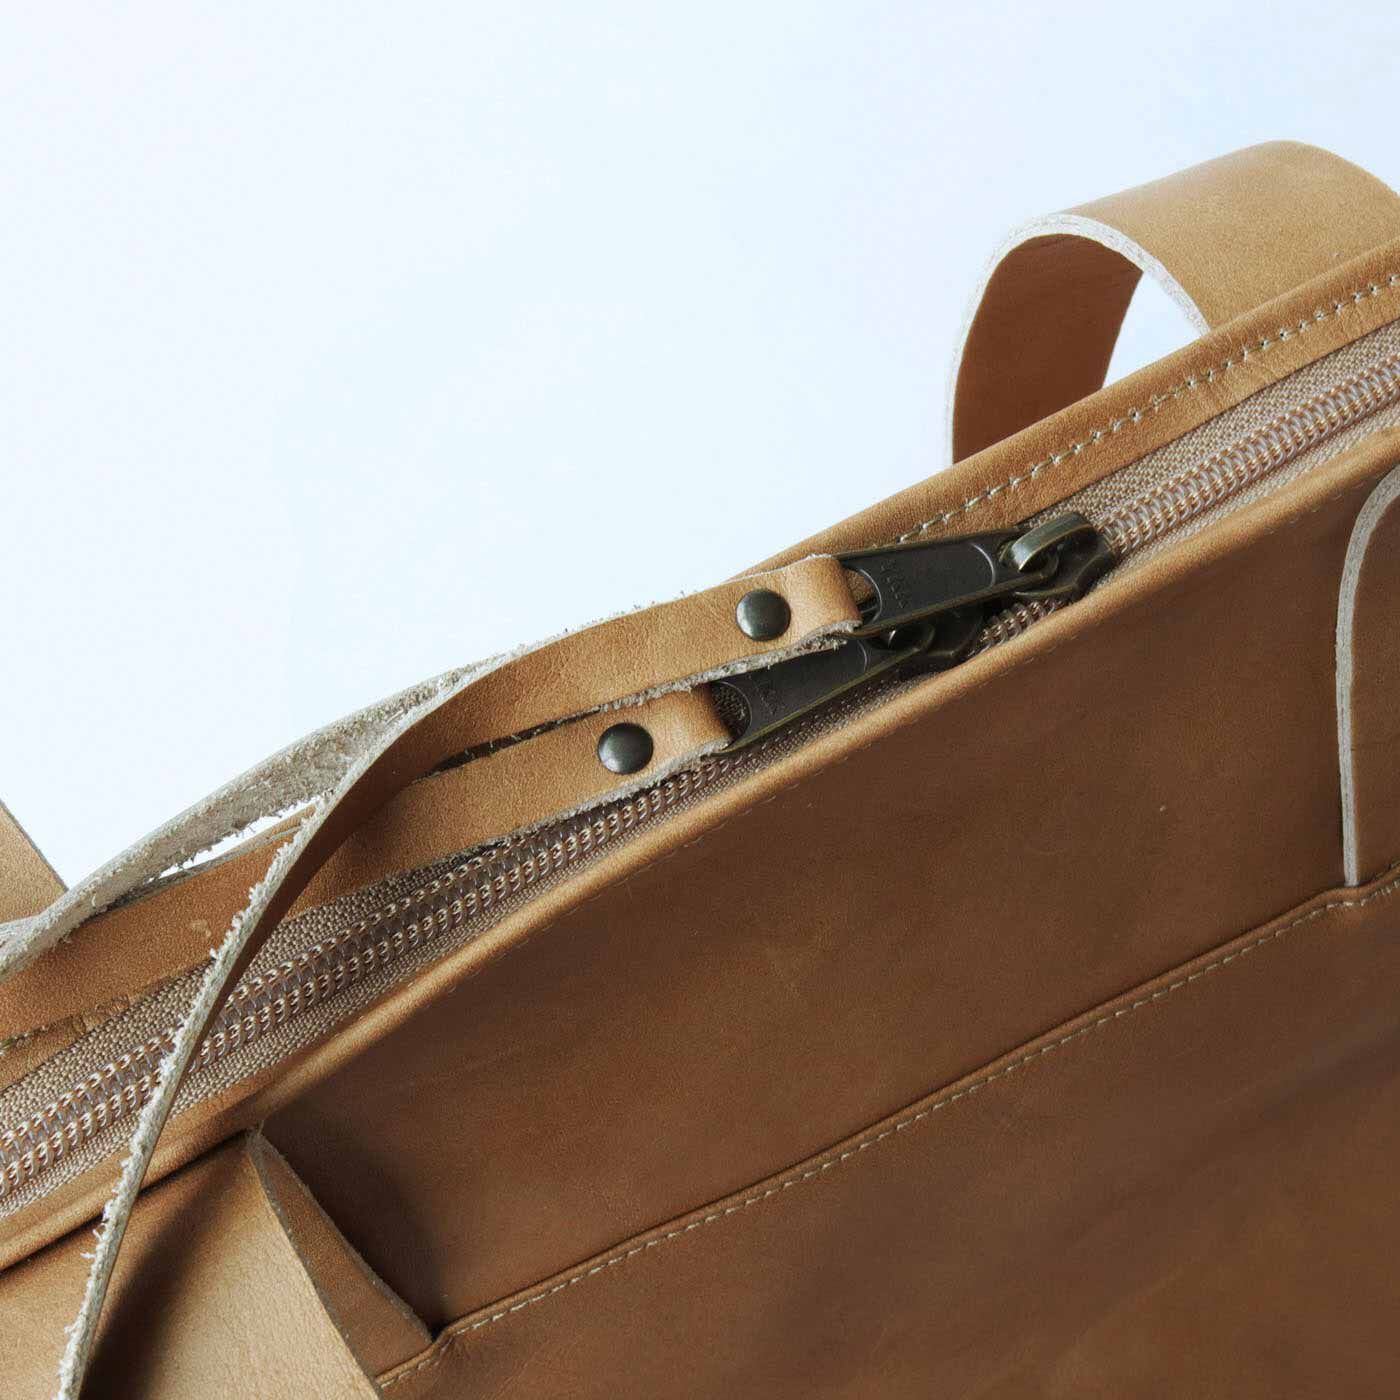 ＆Stories|プロダクトデザイナーと作った 職人本革のお仕事鞄〈ミルクティーベージュ〉[本革　鞄：日本製]|ファスナーで鞄の口を閉めることができるので、電車やバスに乗ったときも棚に上げることができます。